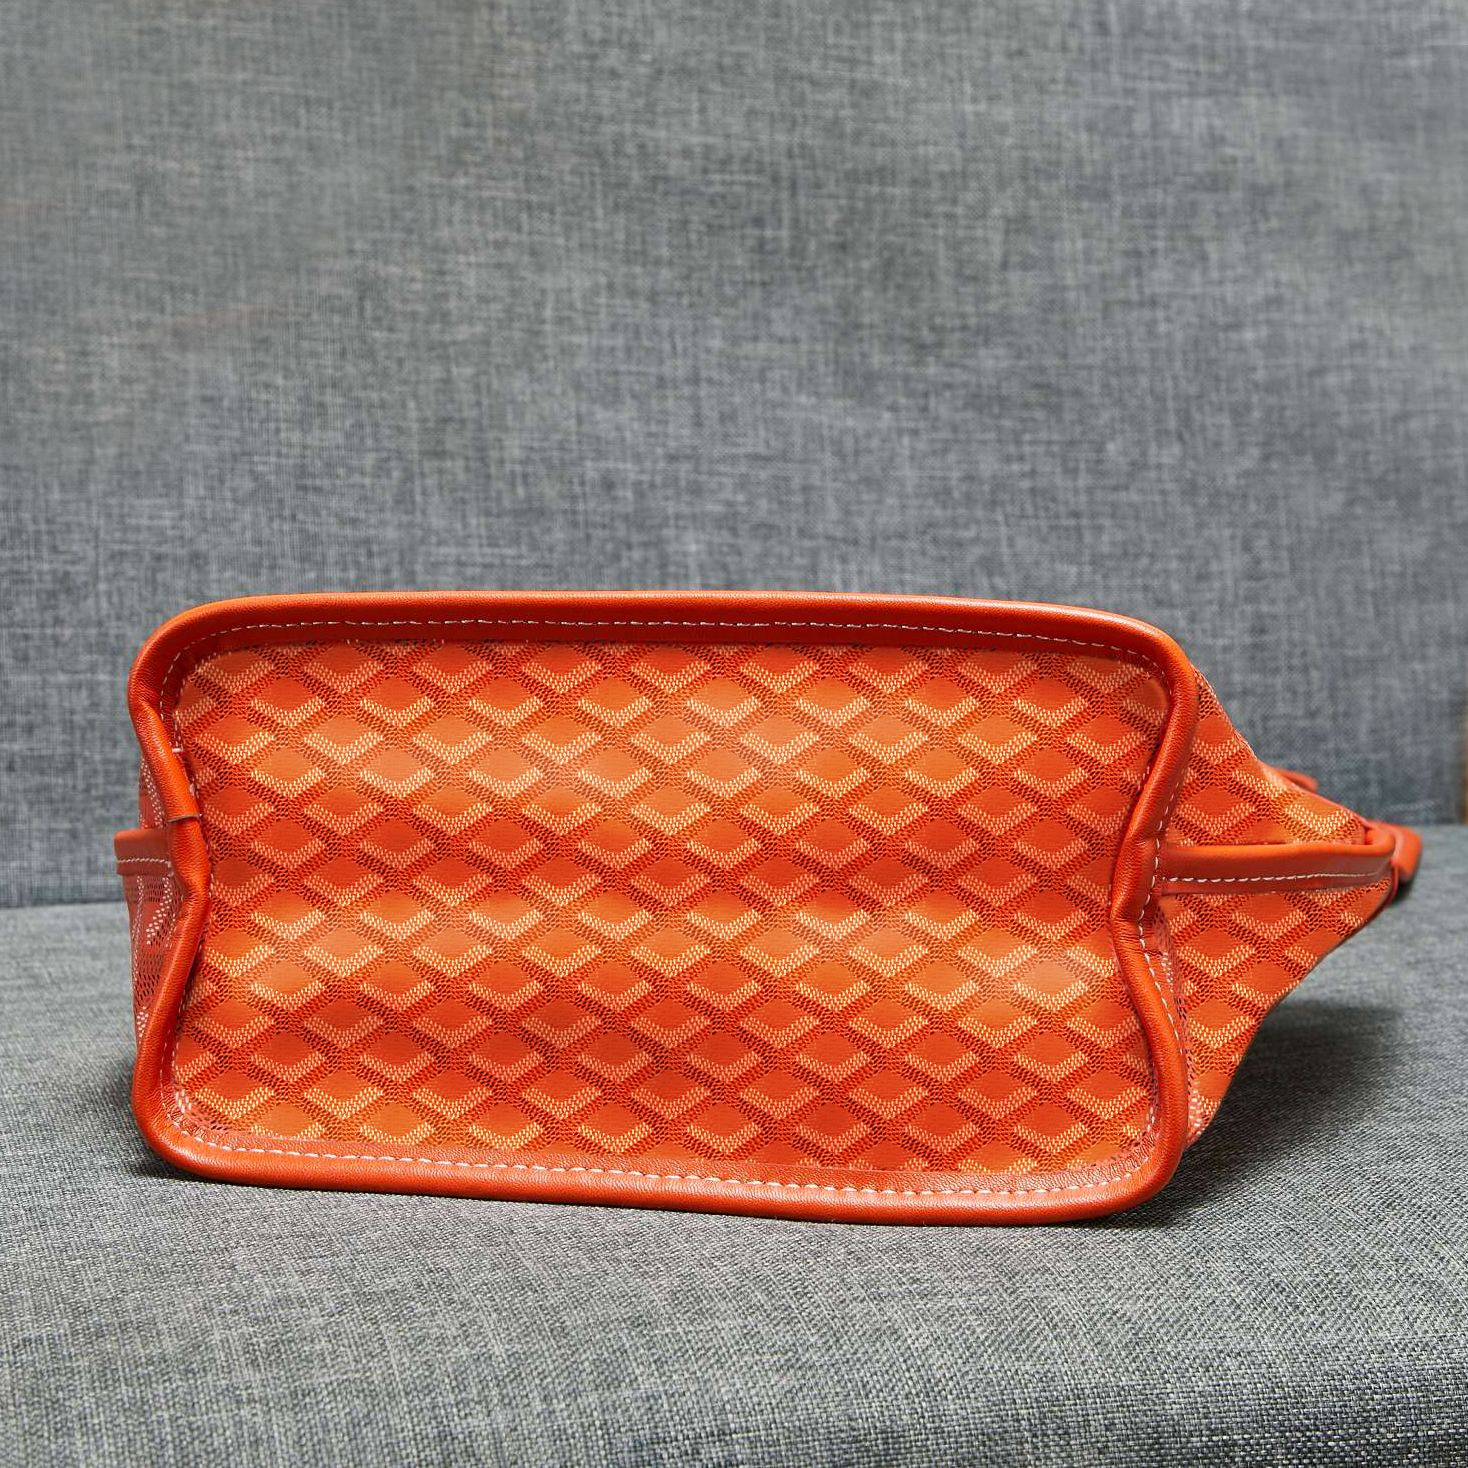 أفضل مصممين مصممين مصغرة حقيبة النساء الأزياء الفاخرة حقائب تسوق حقيبة يد صغيرة.